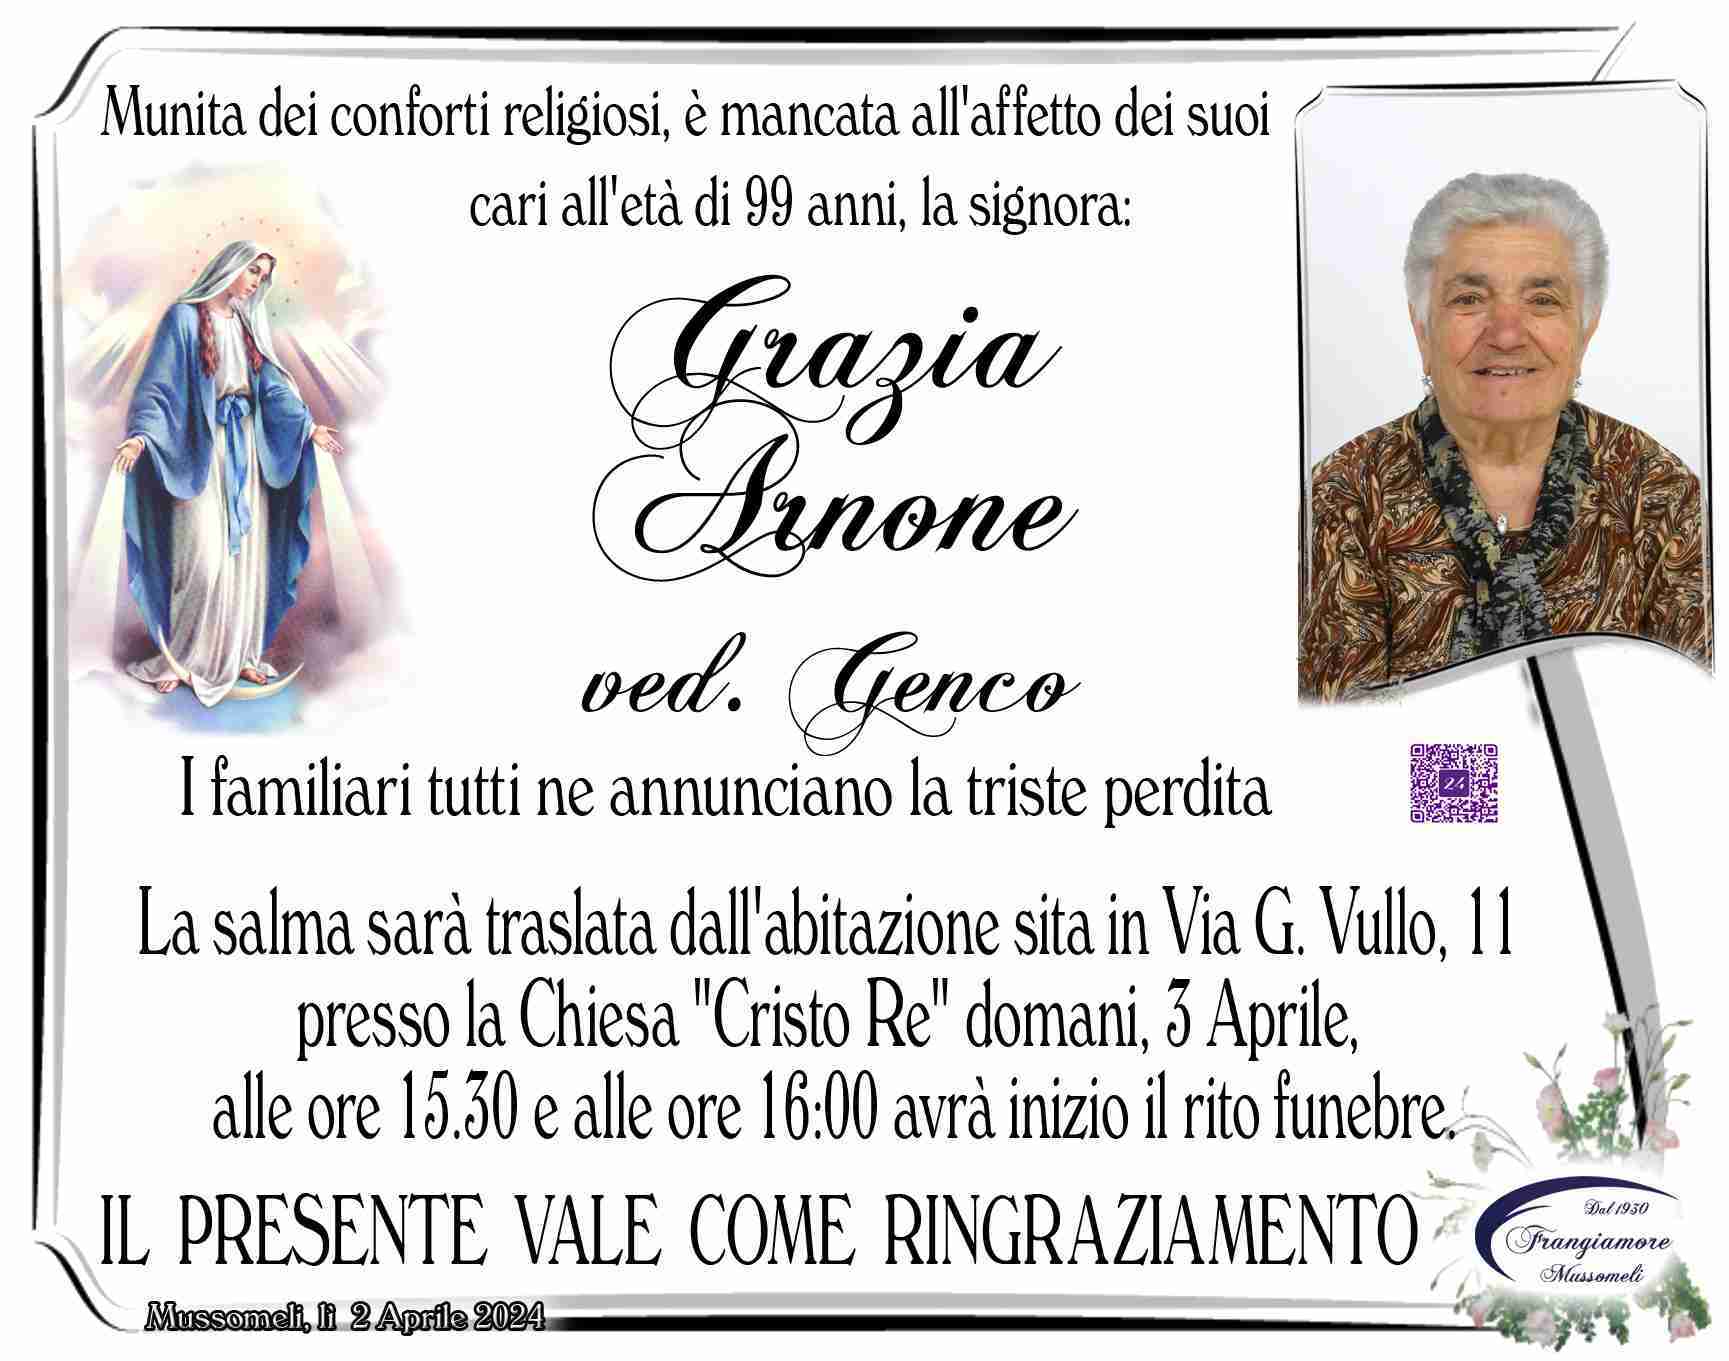 Grazia Arnone